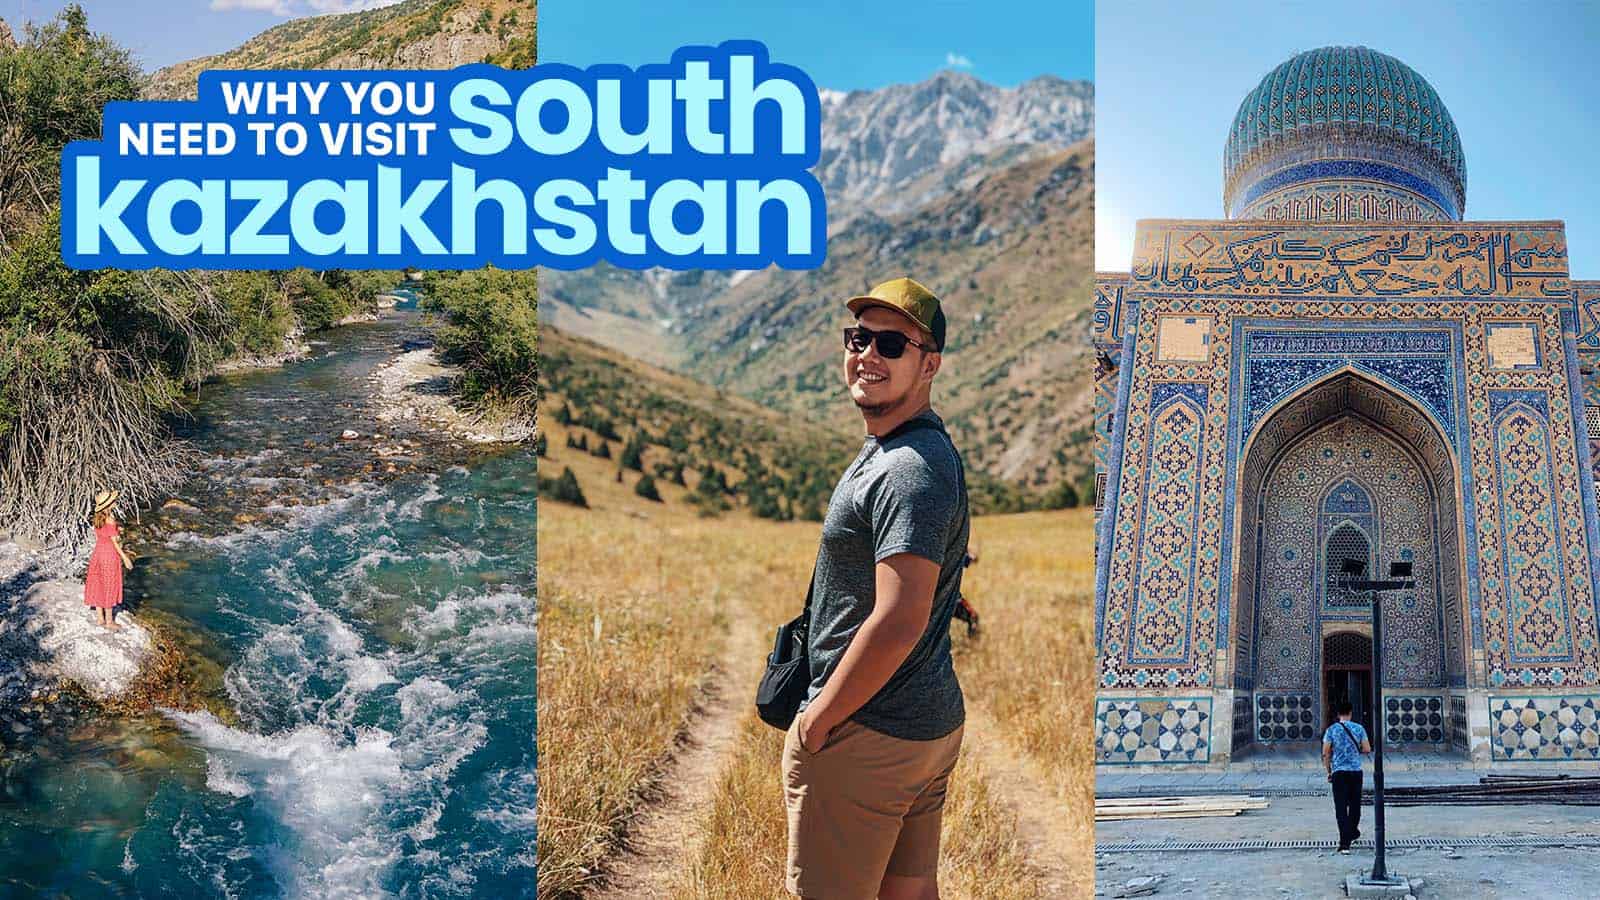 10 BEST THINGS TO DO IN TURKISTAN (South Kazakhstan Region)